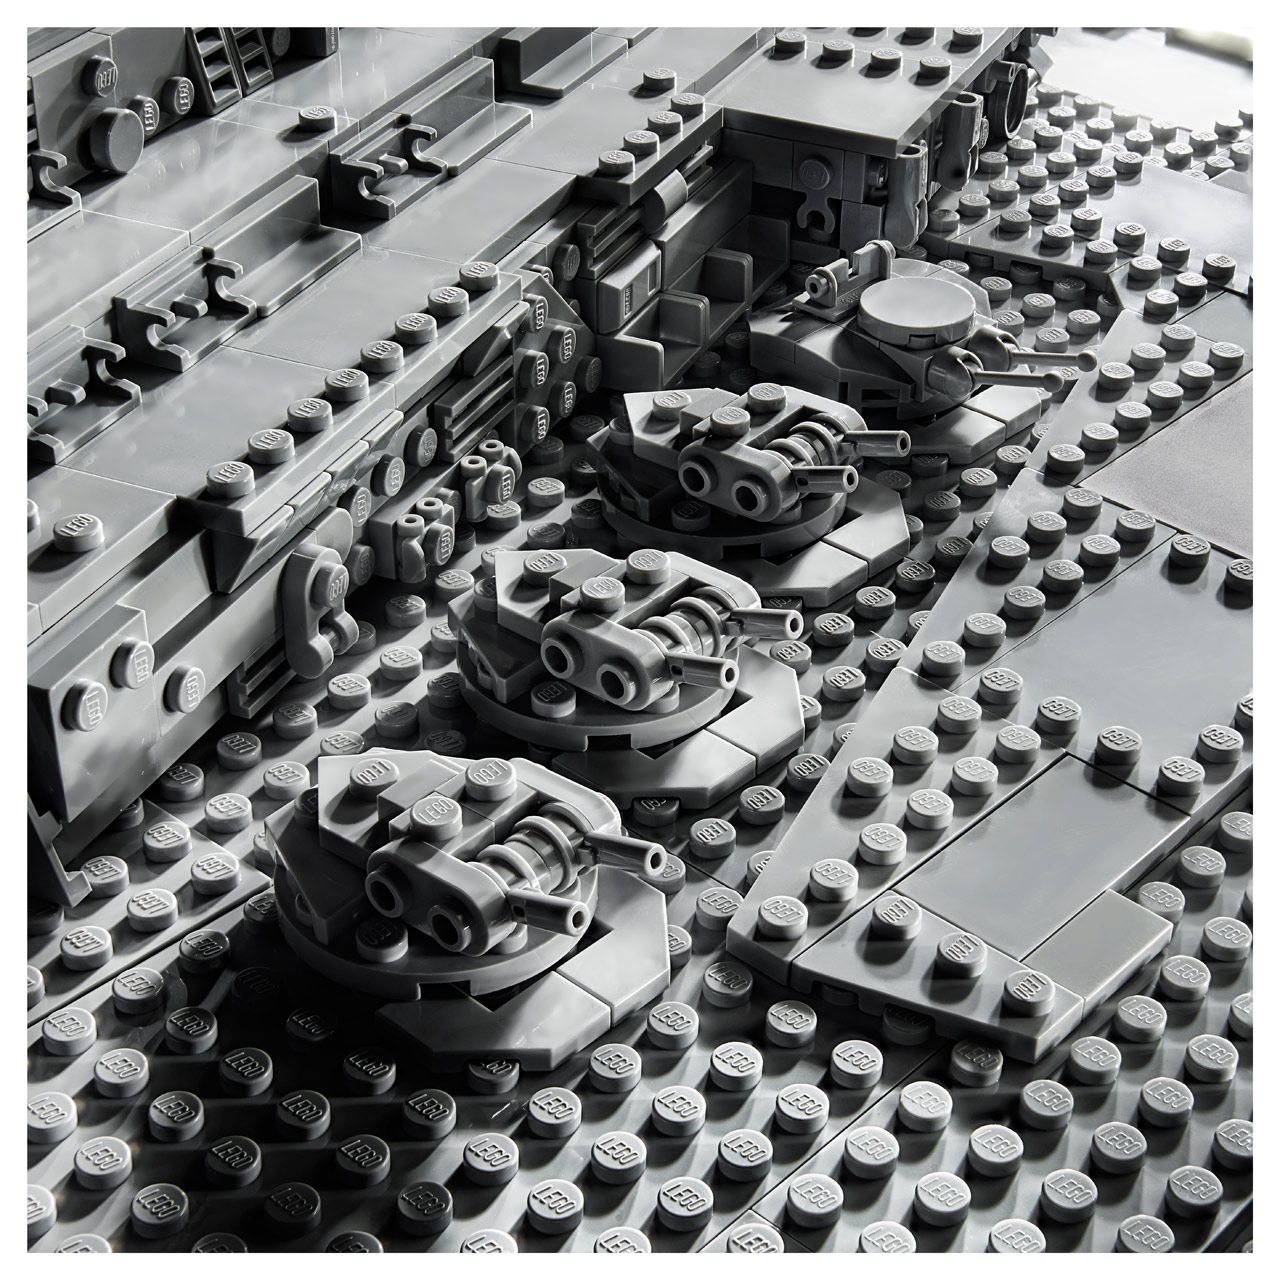 Star Wars Star Destroyer Lego Set Image #7